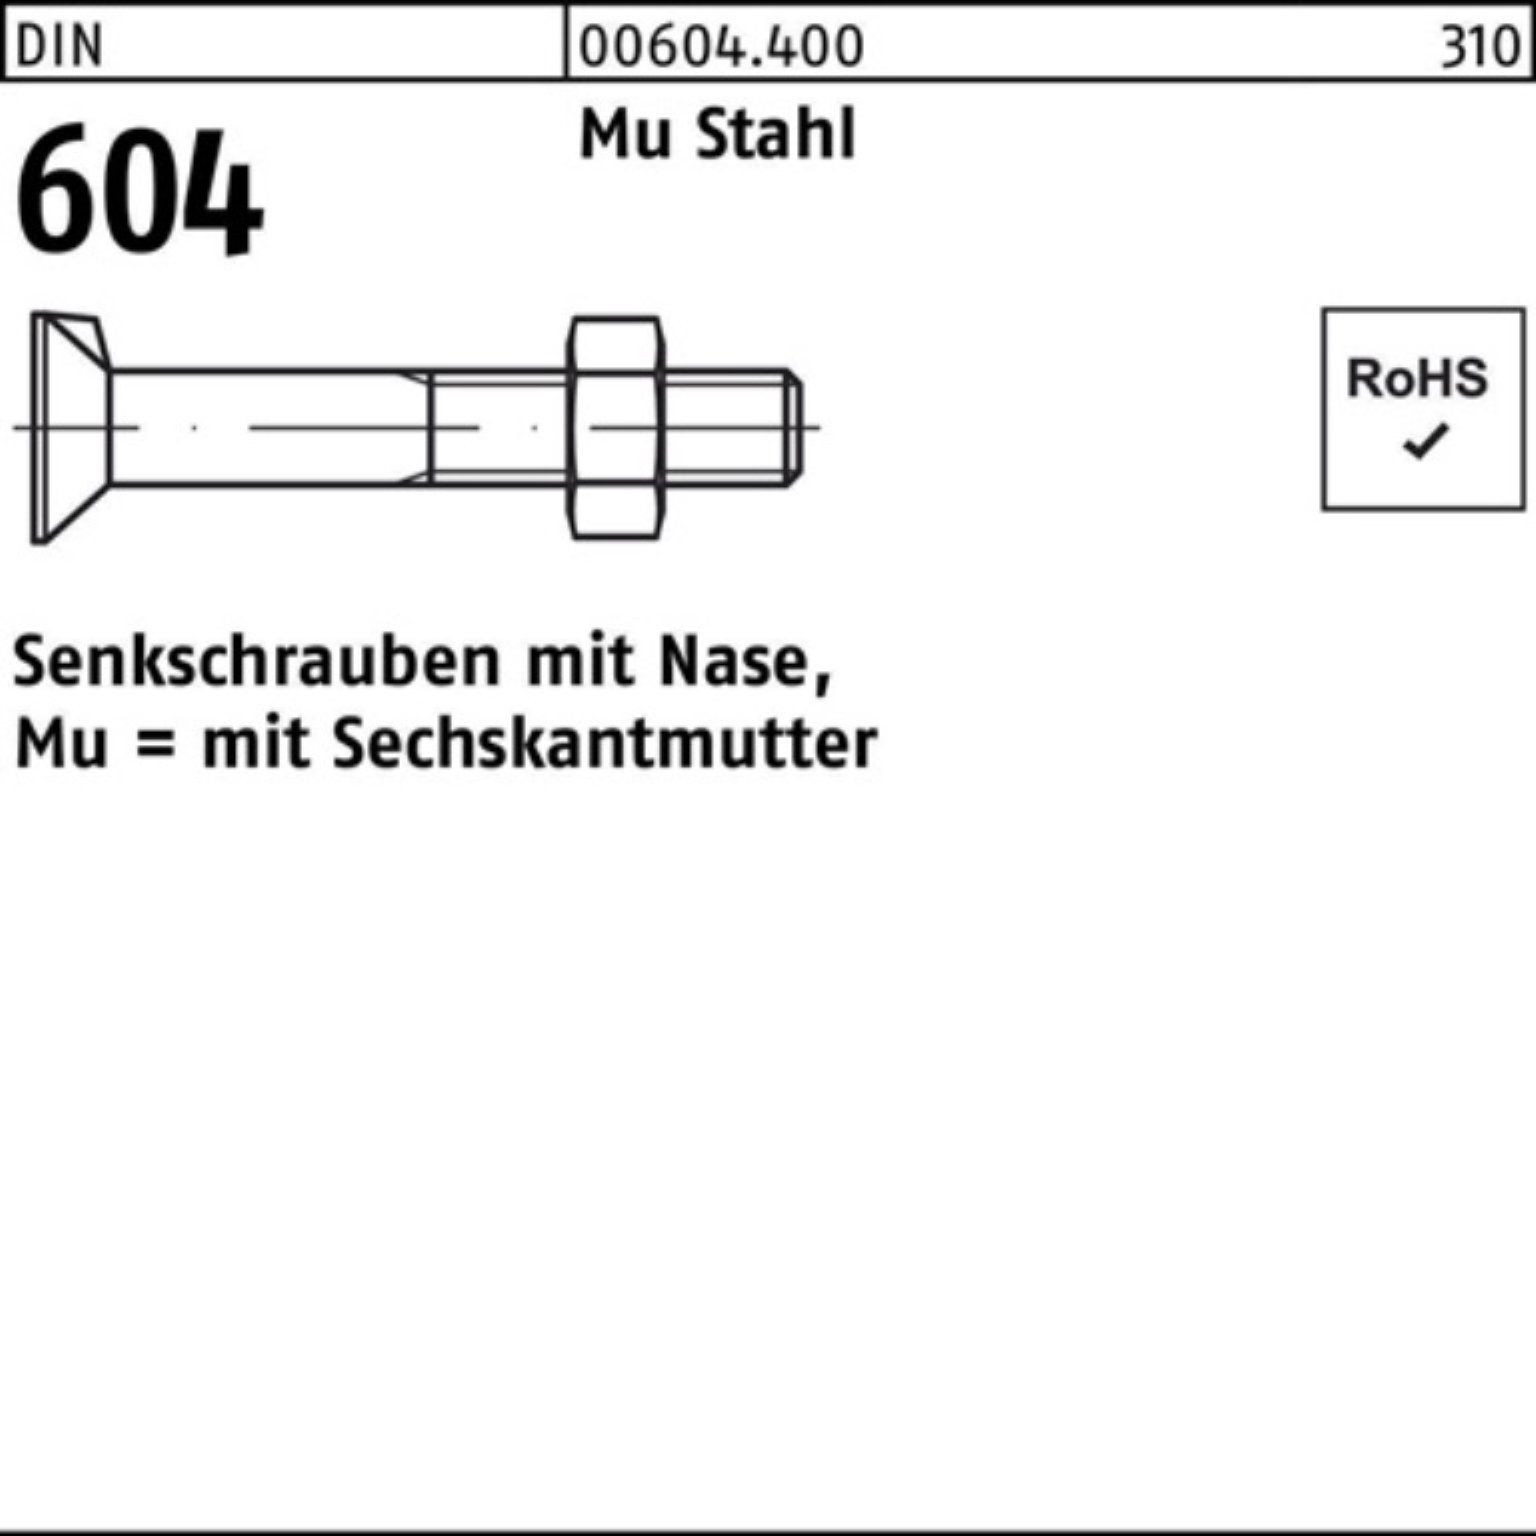 Reyher Senkschraube 100er Pack Senkschraube DIN 604 Nase/6-ktmutter M16x 70 Mu Stahl 4.6 2